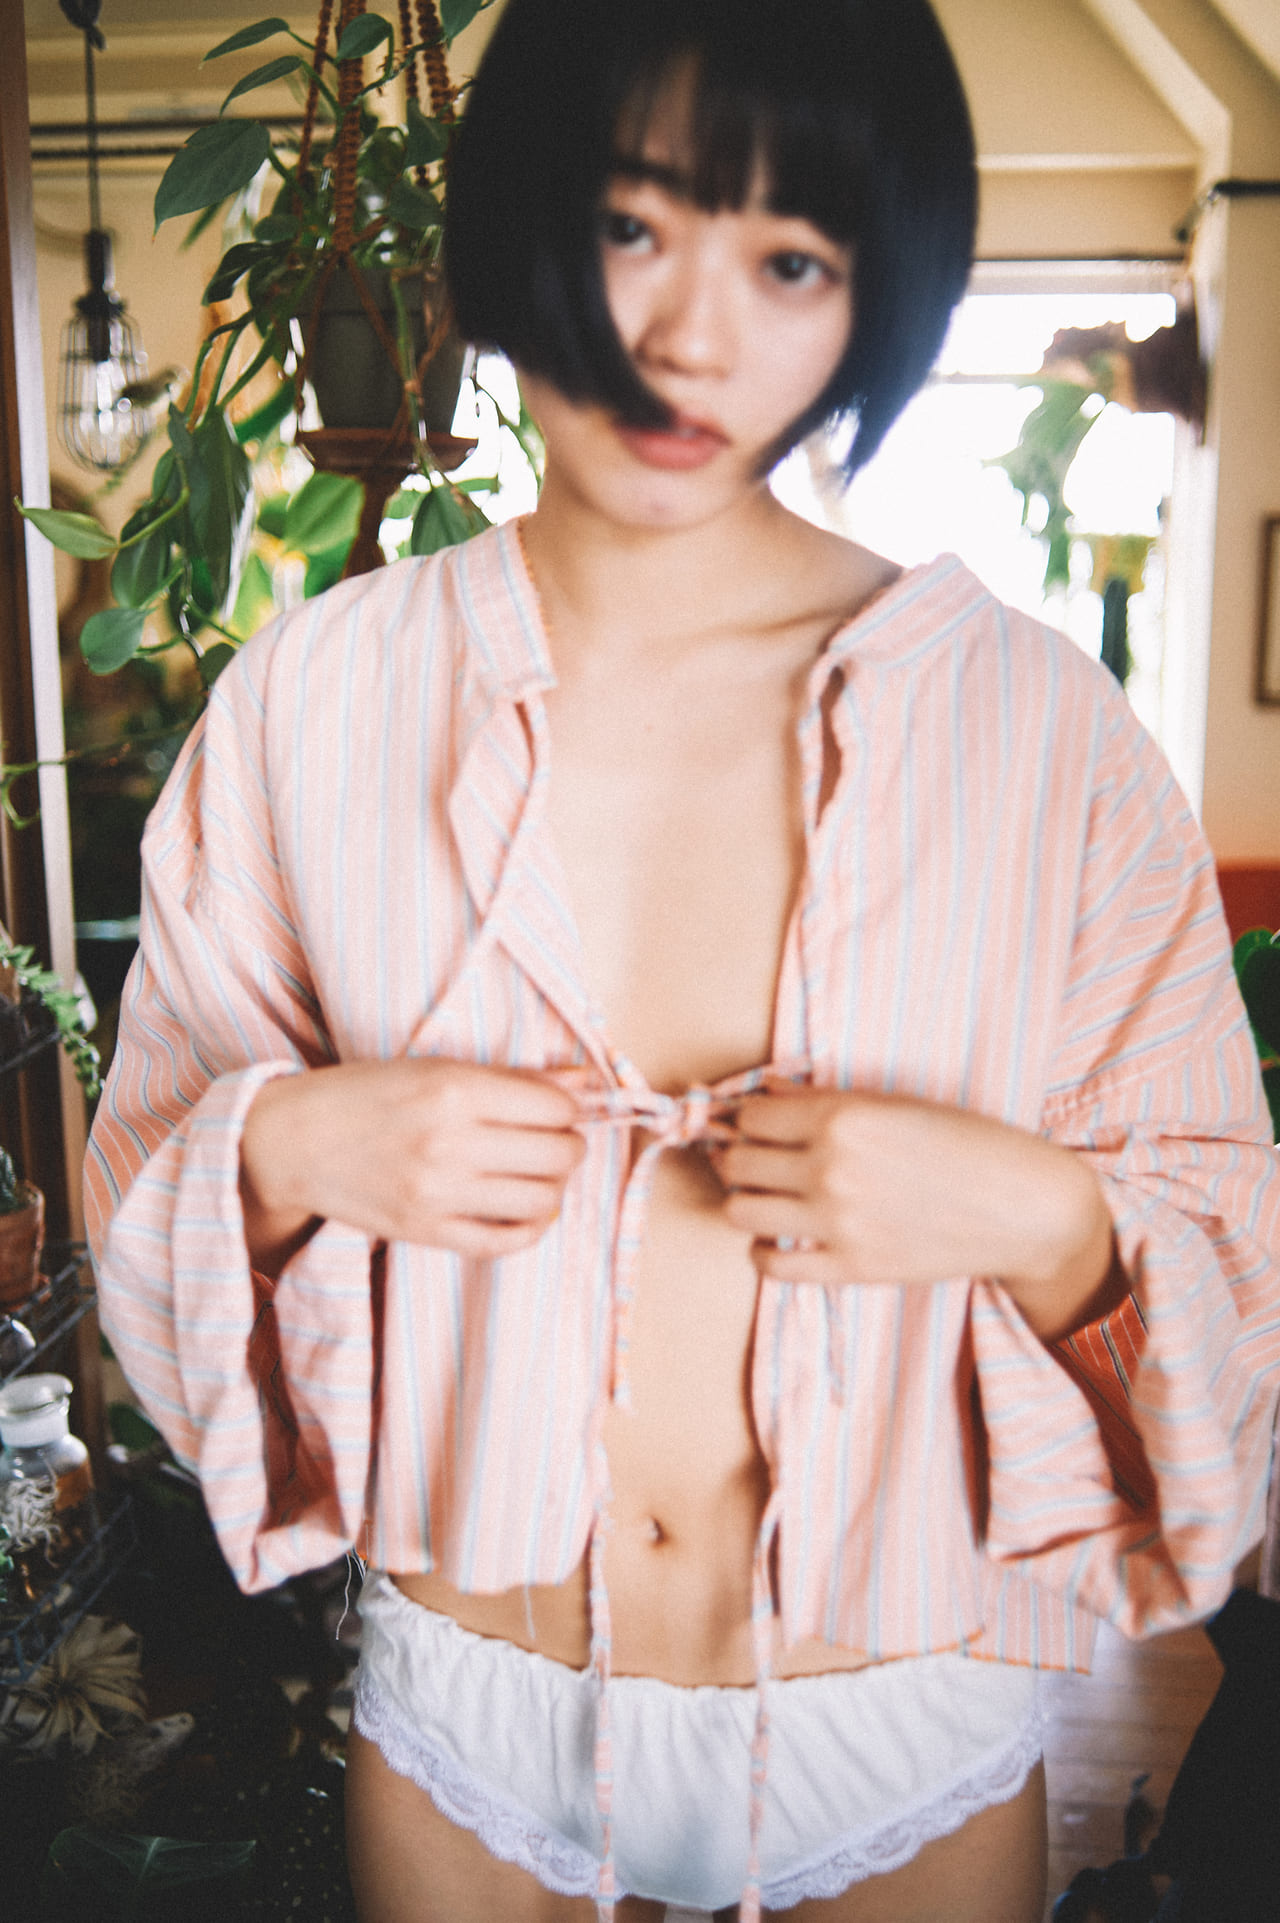 コンプレックスがあっても自分が好き 無加工 36人の女子のかわいいヌード写真集発売記念インタビュー Harajuku Pop Web